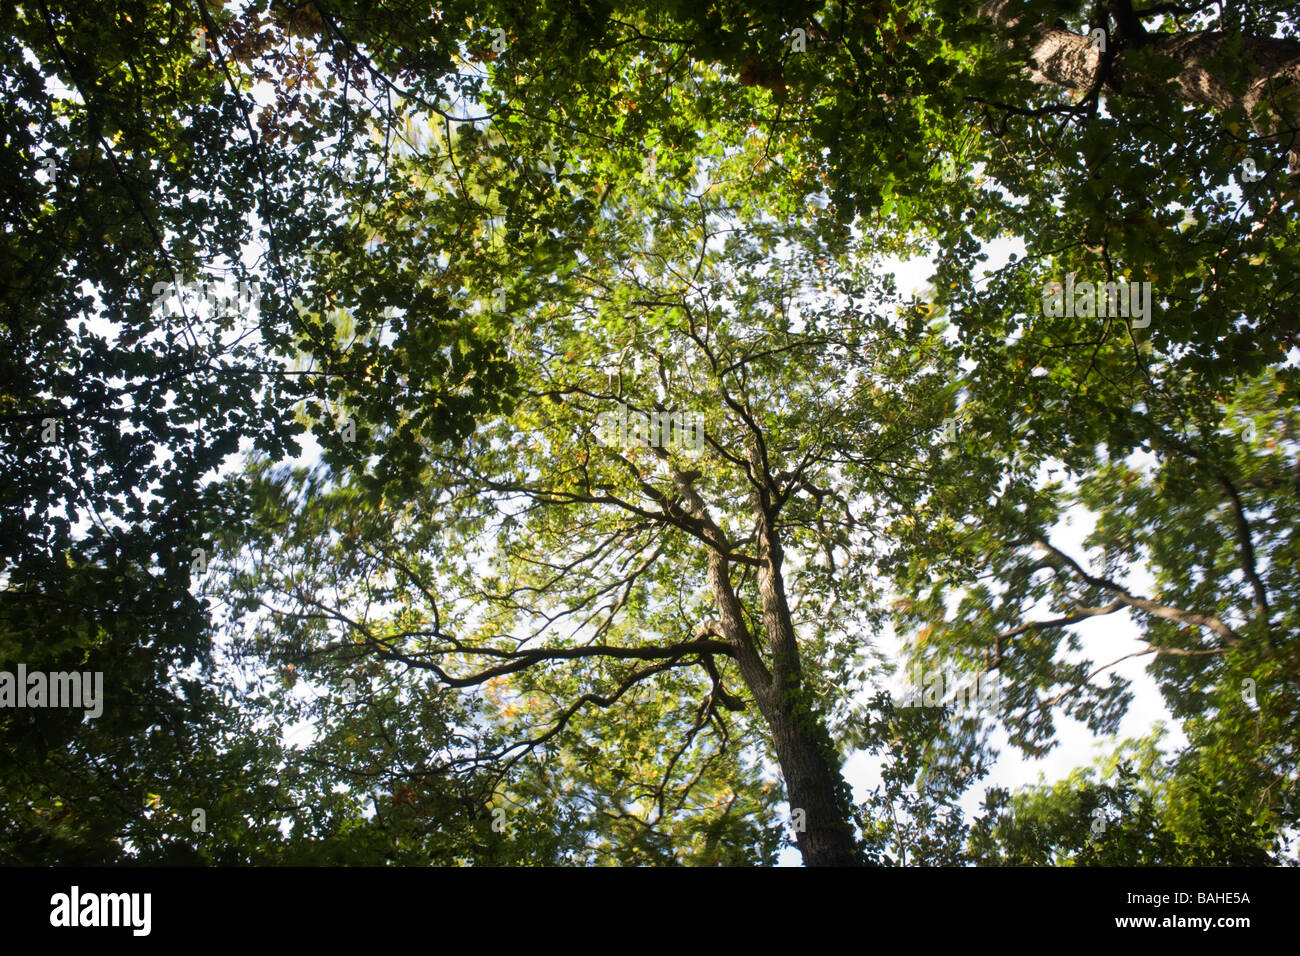 L'été du soleil filtre à travers les branches et le feuillage vert vieux de chênes se balançant dans l'ancienne forêt de bois Sydenham Banque D'Images